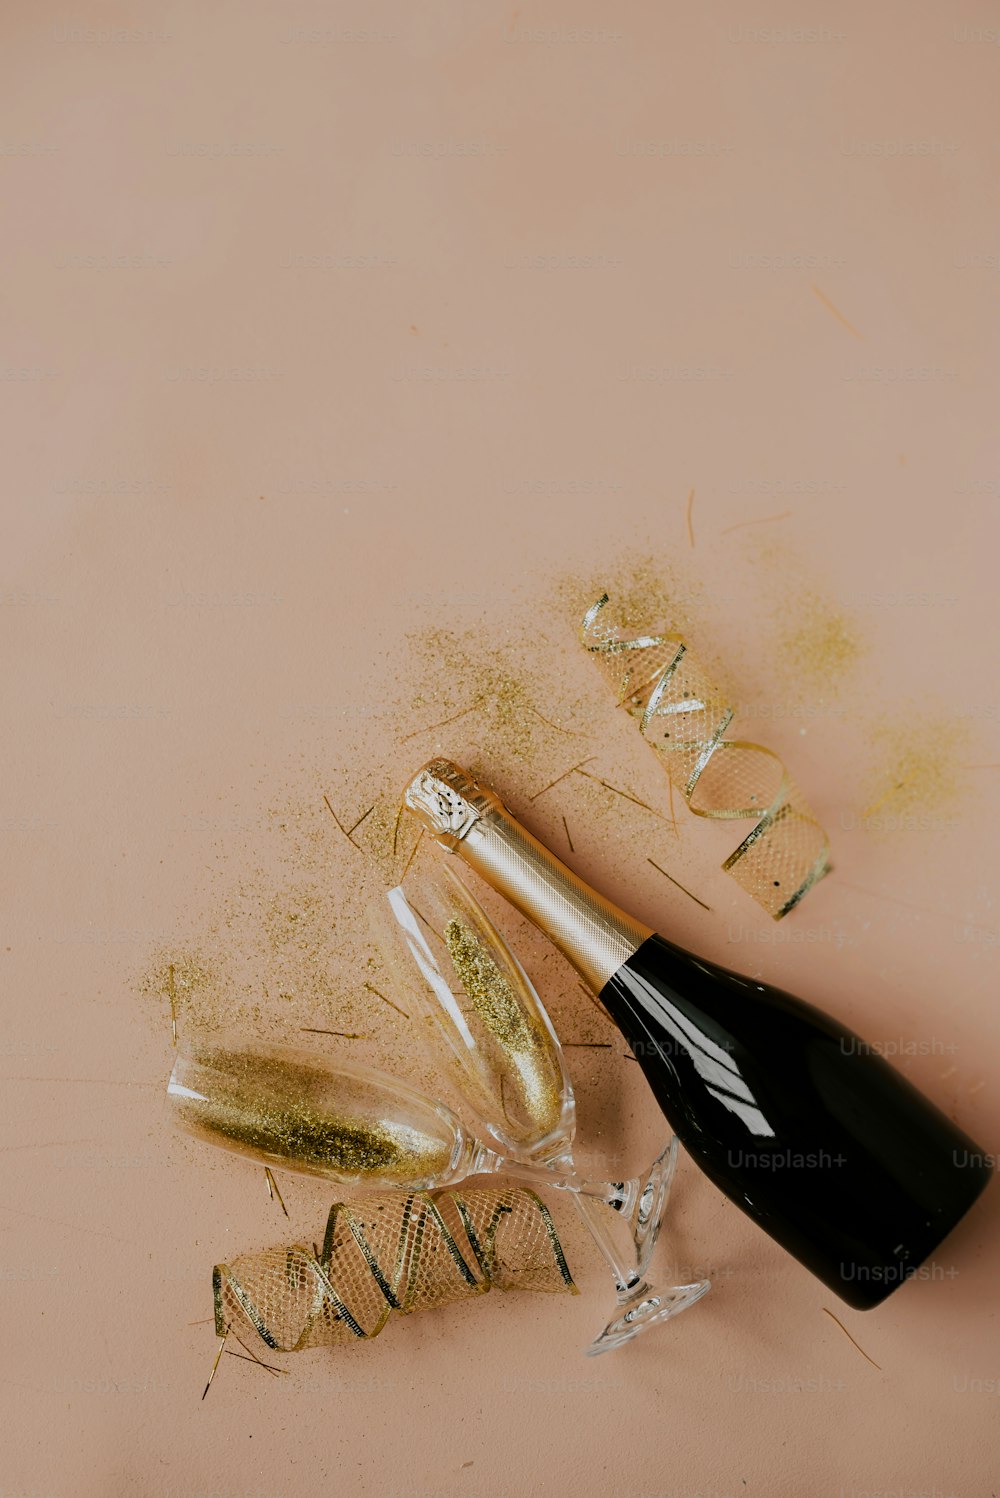 eine Flasche Champagner neben etwas goldenem Konfetti